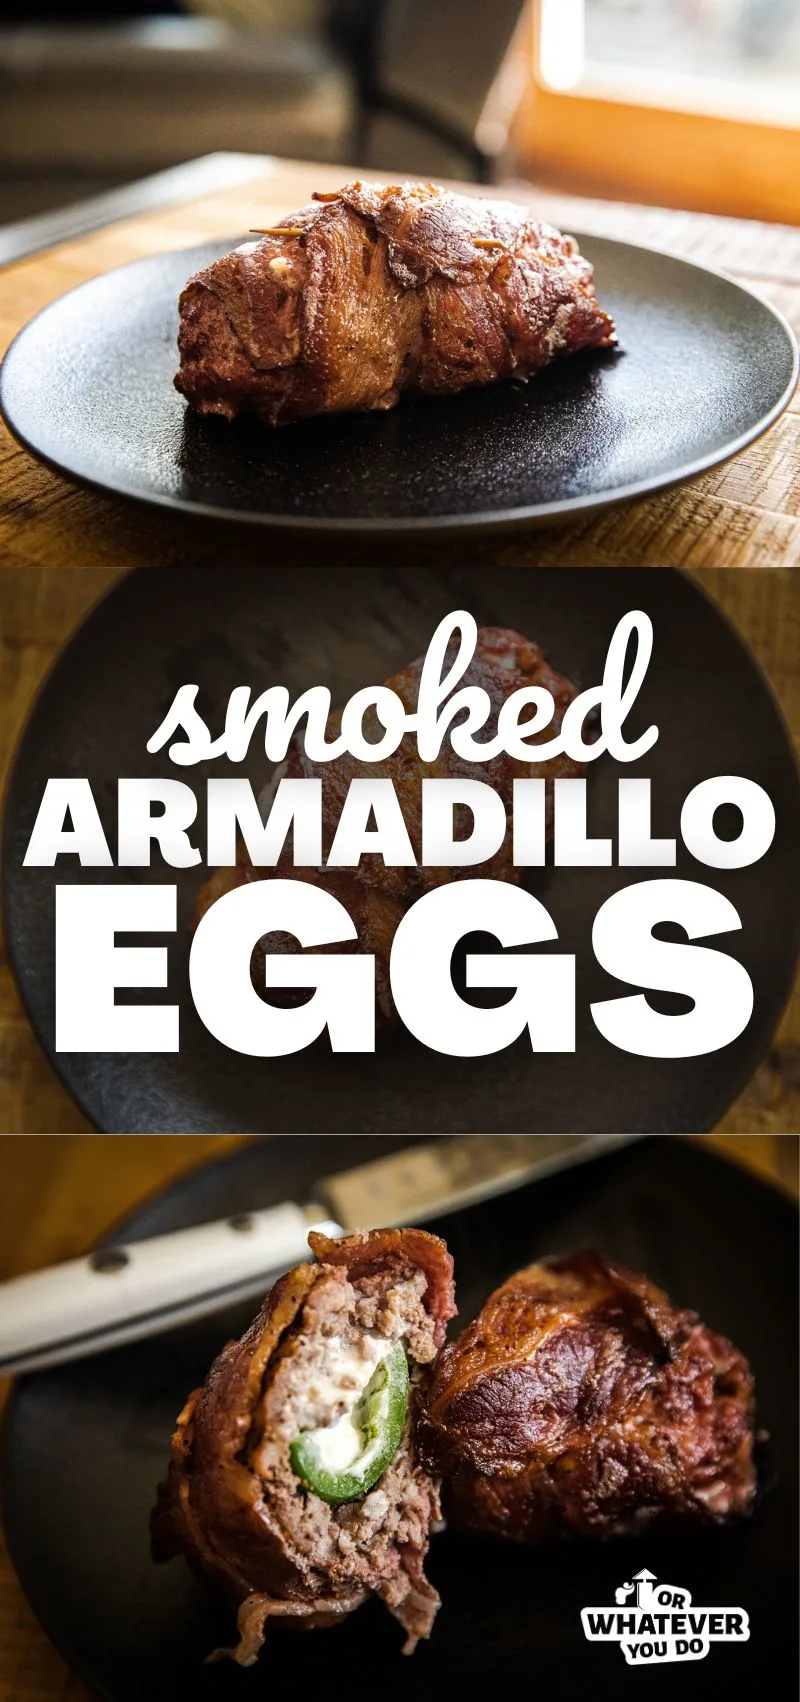 Armadillo Eggs- The Chicken Way